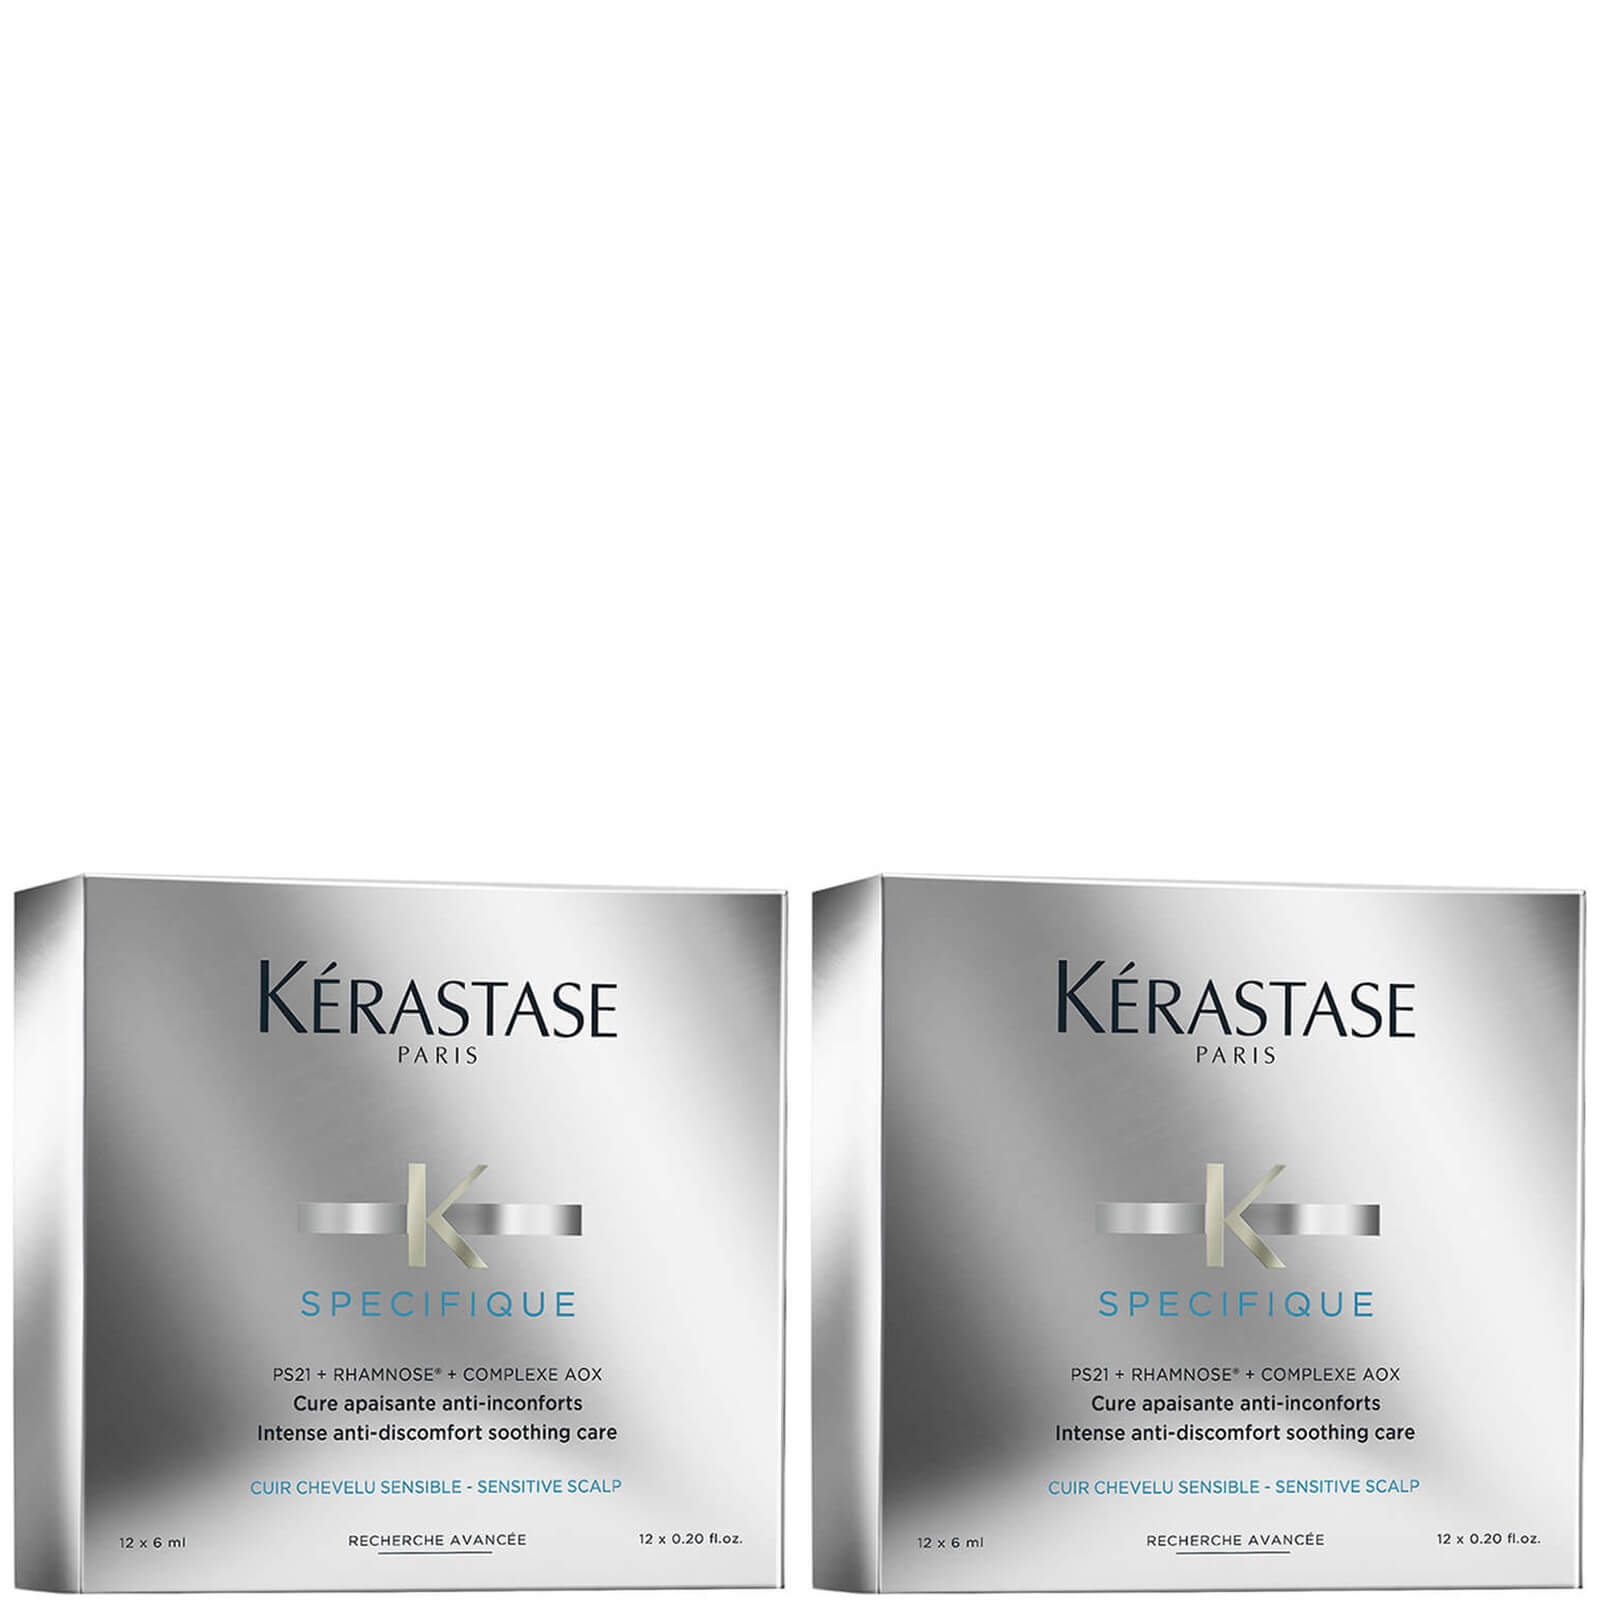 Dúo de tratamientos Specifique Cure Apaisant Anti-Inconforts de Kérastase 12 x 6 ml